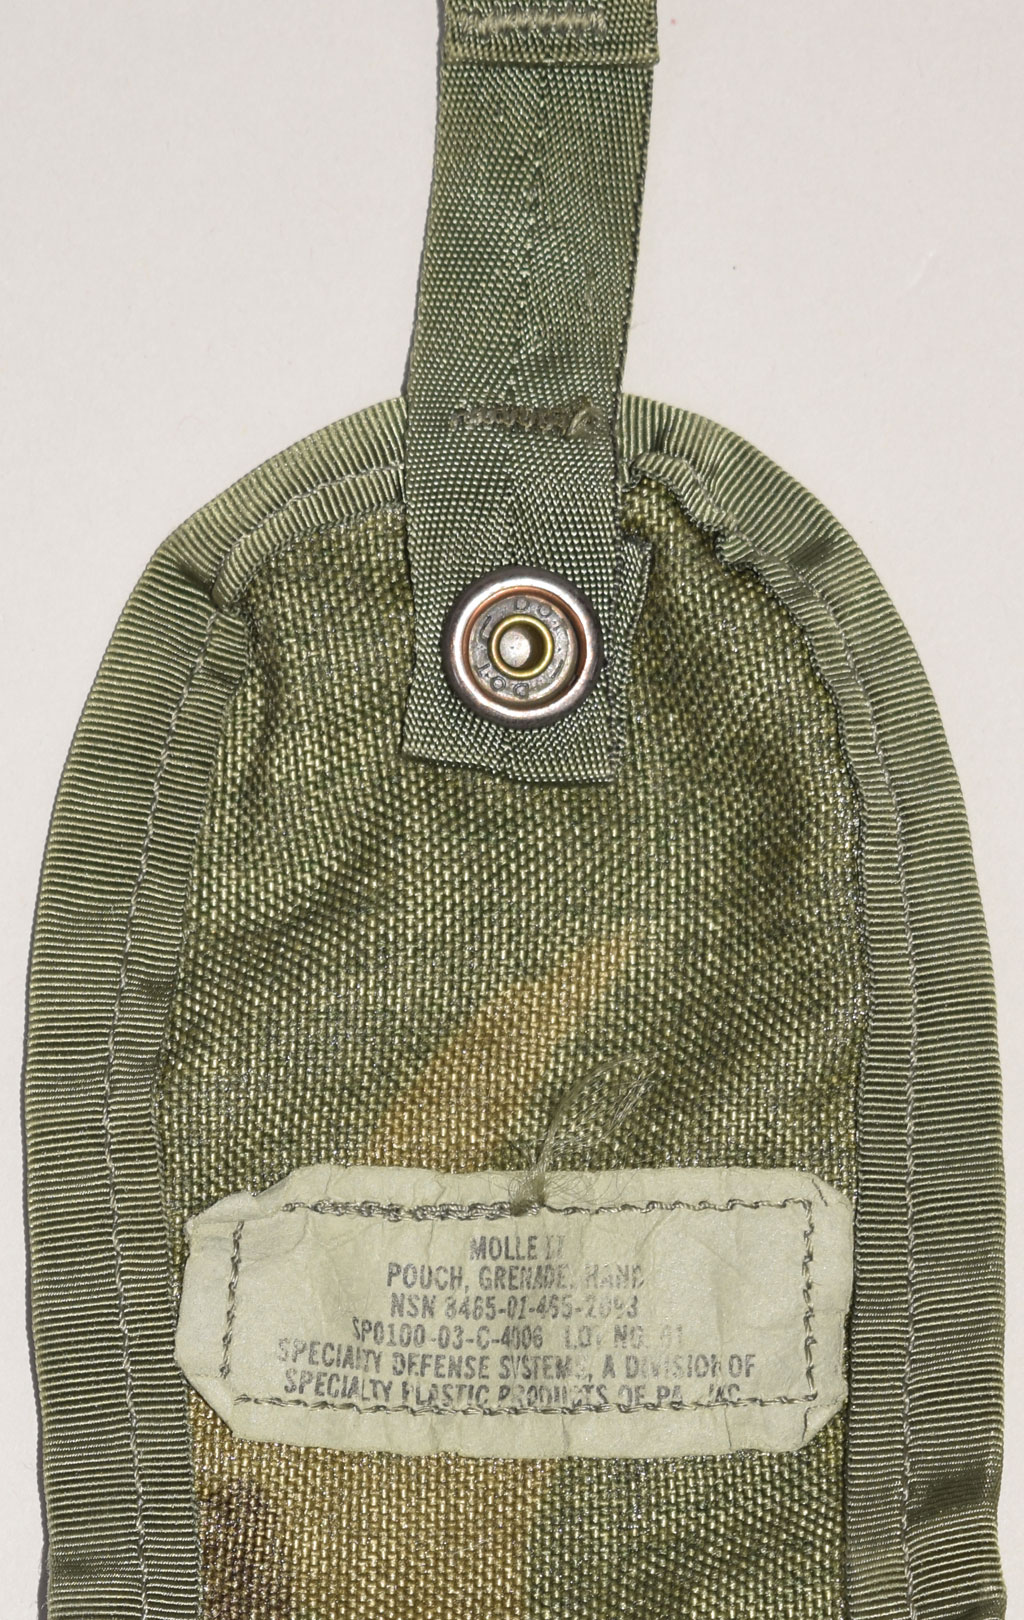 Подсумок гранатный Hand Grenade MOLLE camo woodland б/у США